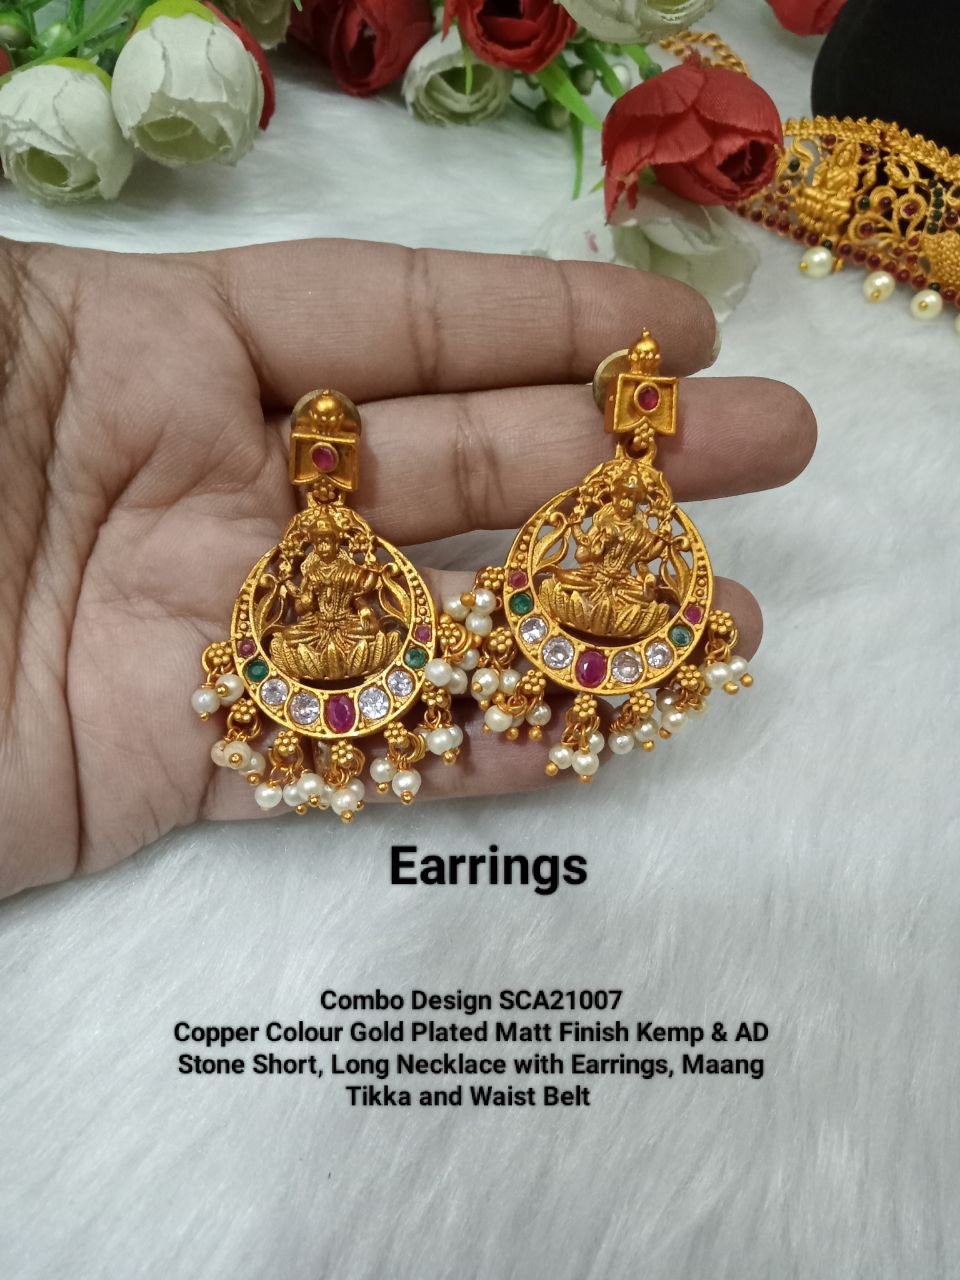 Beautiful Multi Color Kundan Meenakari Earrings For Girls/Women (MKE1625)  at Rs 192/pair in Jaipur